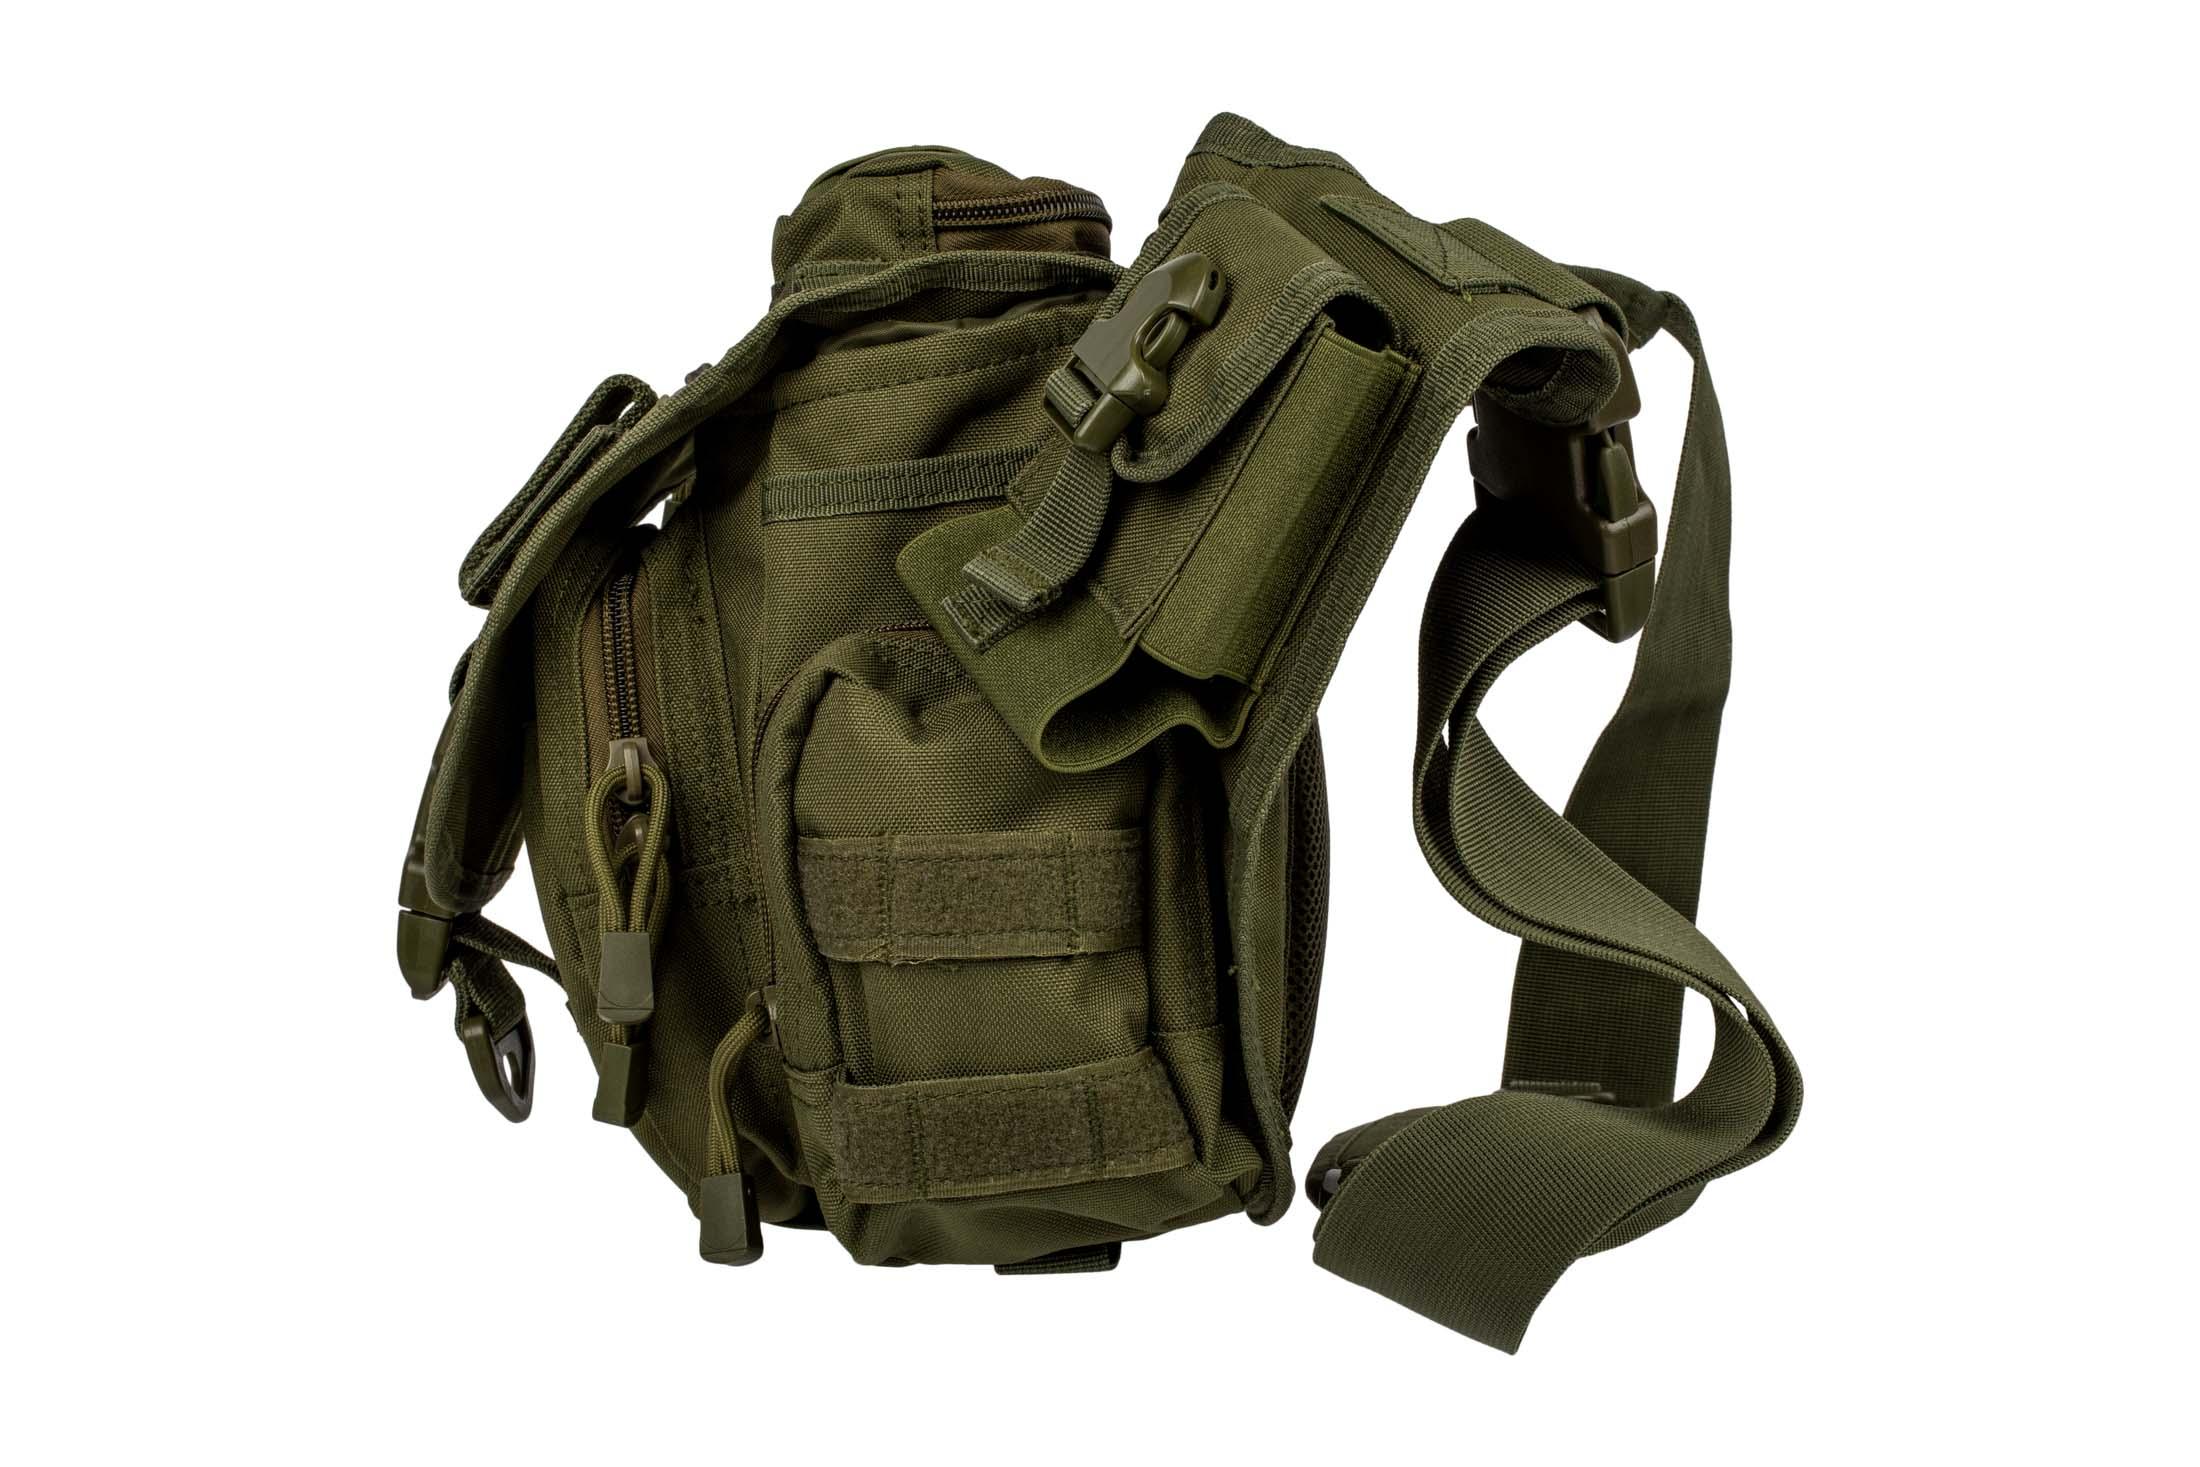 Primary Arms Tactical Shoulder Bag - Olive Drab Green PAGSSBODG